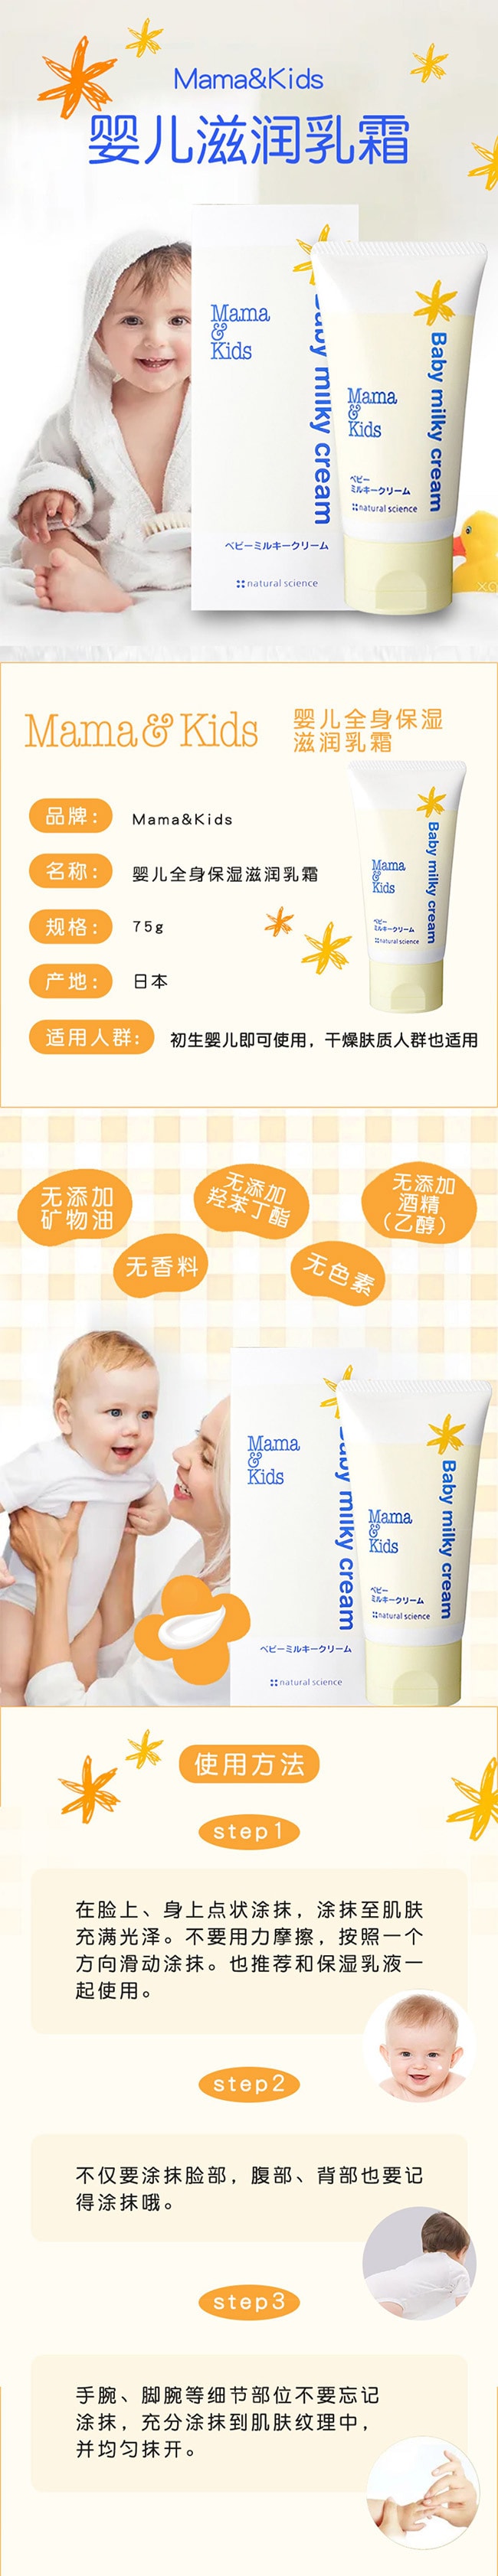 【日本直邮】MAMA&KIDS妈妈宝贝 婴儿滋润乳霜 宝宝保湿润肤温和补水 面霜 身体霜 75g